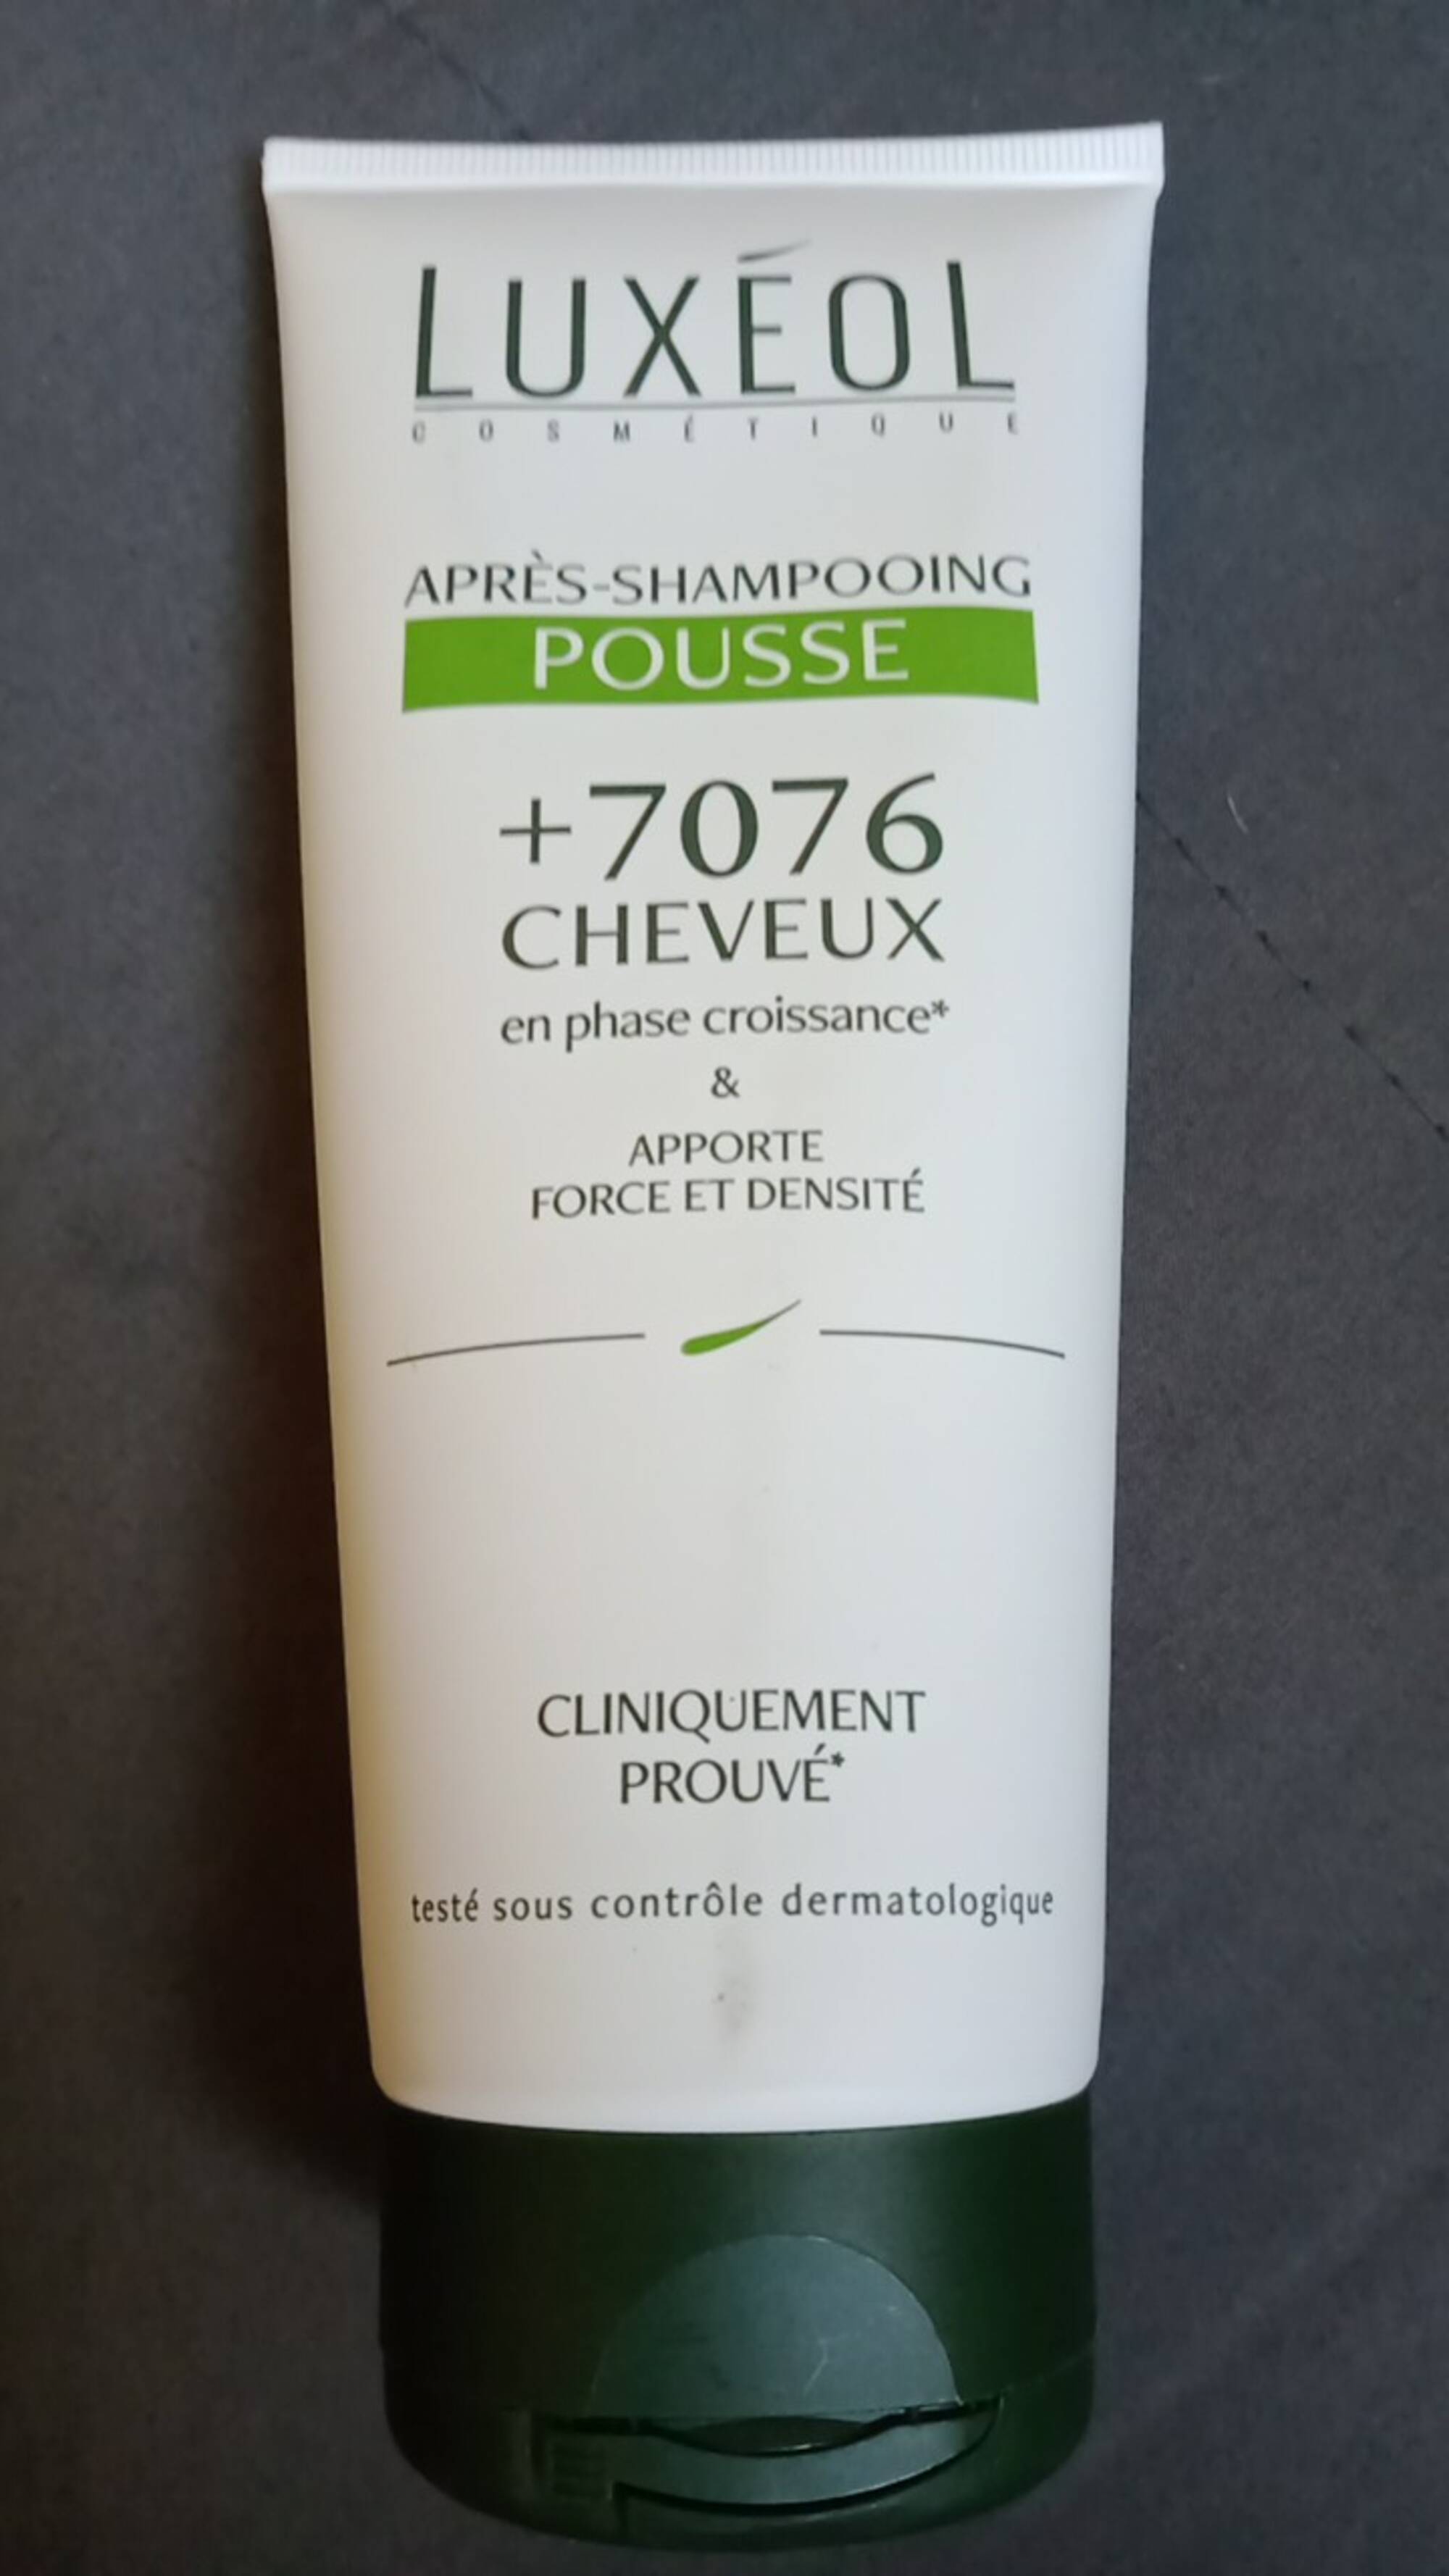 LUXÉOL - +7076 cheveux - Après-shampooing pousse